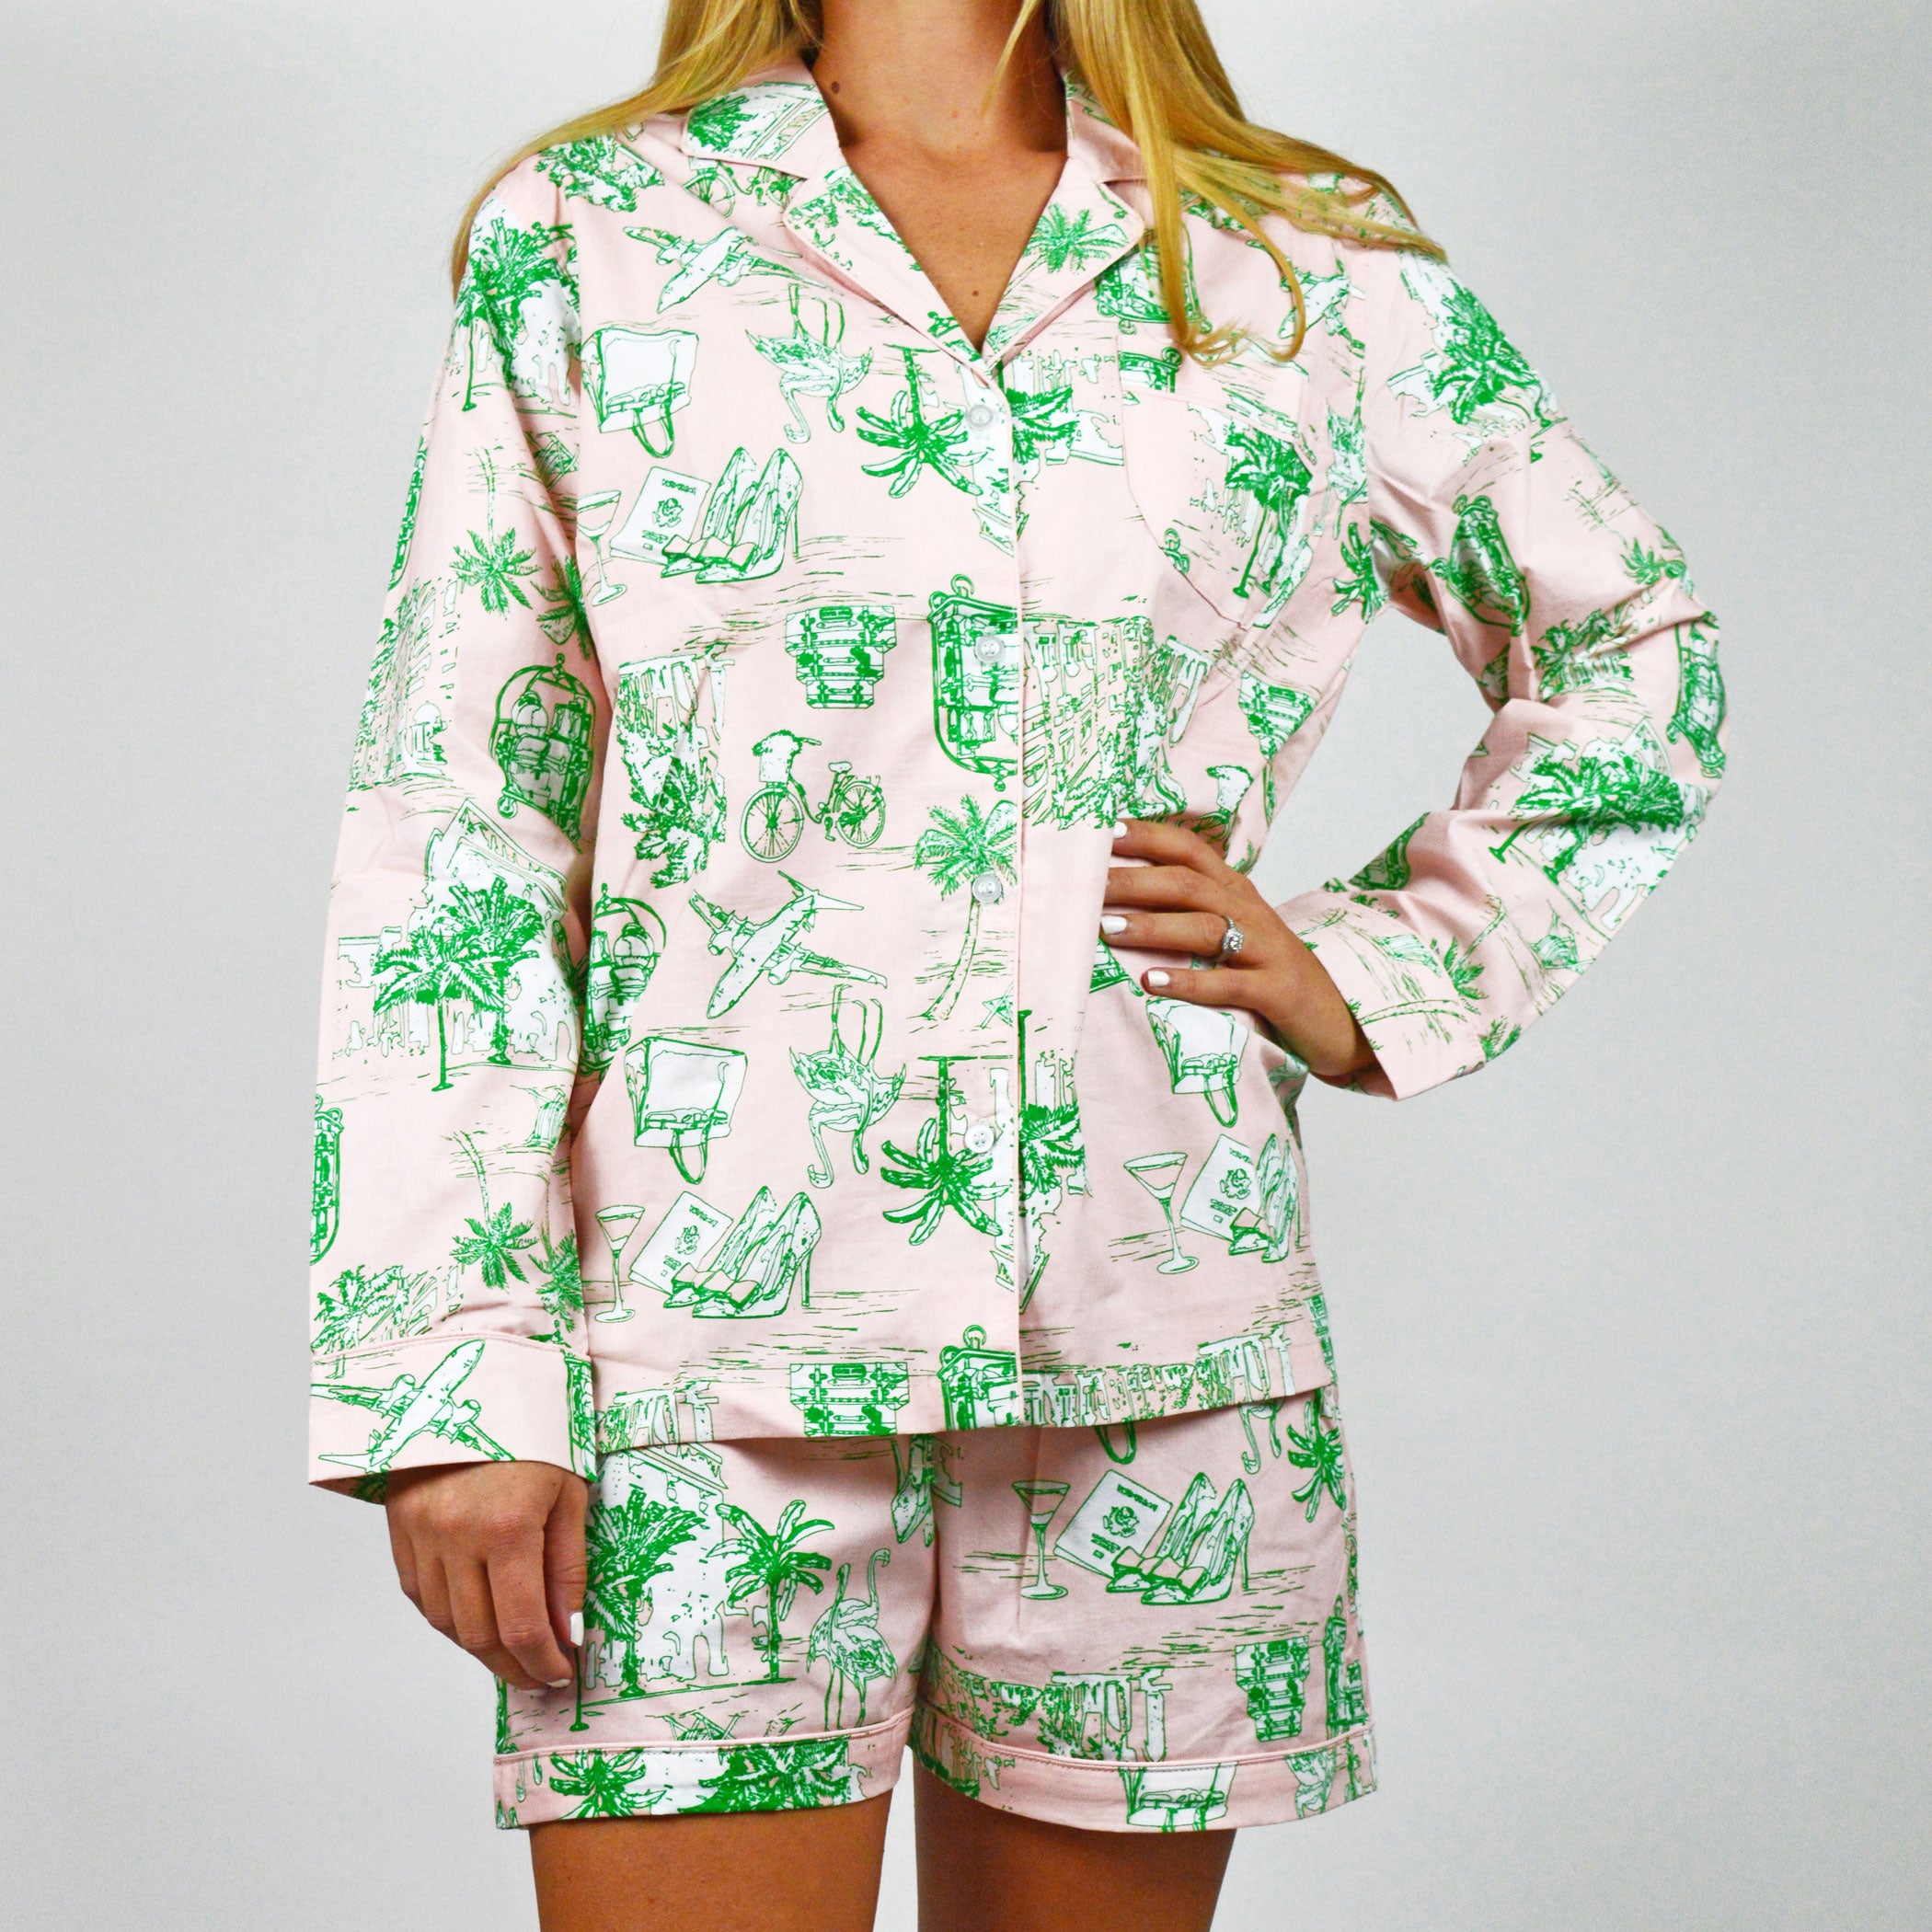 Palm Beach Pink Pajama Set